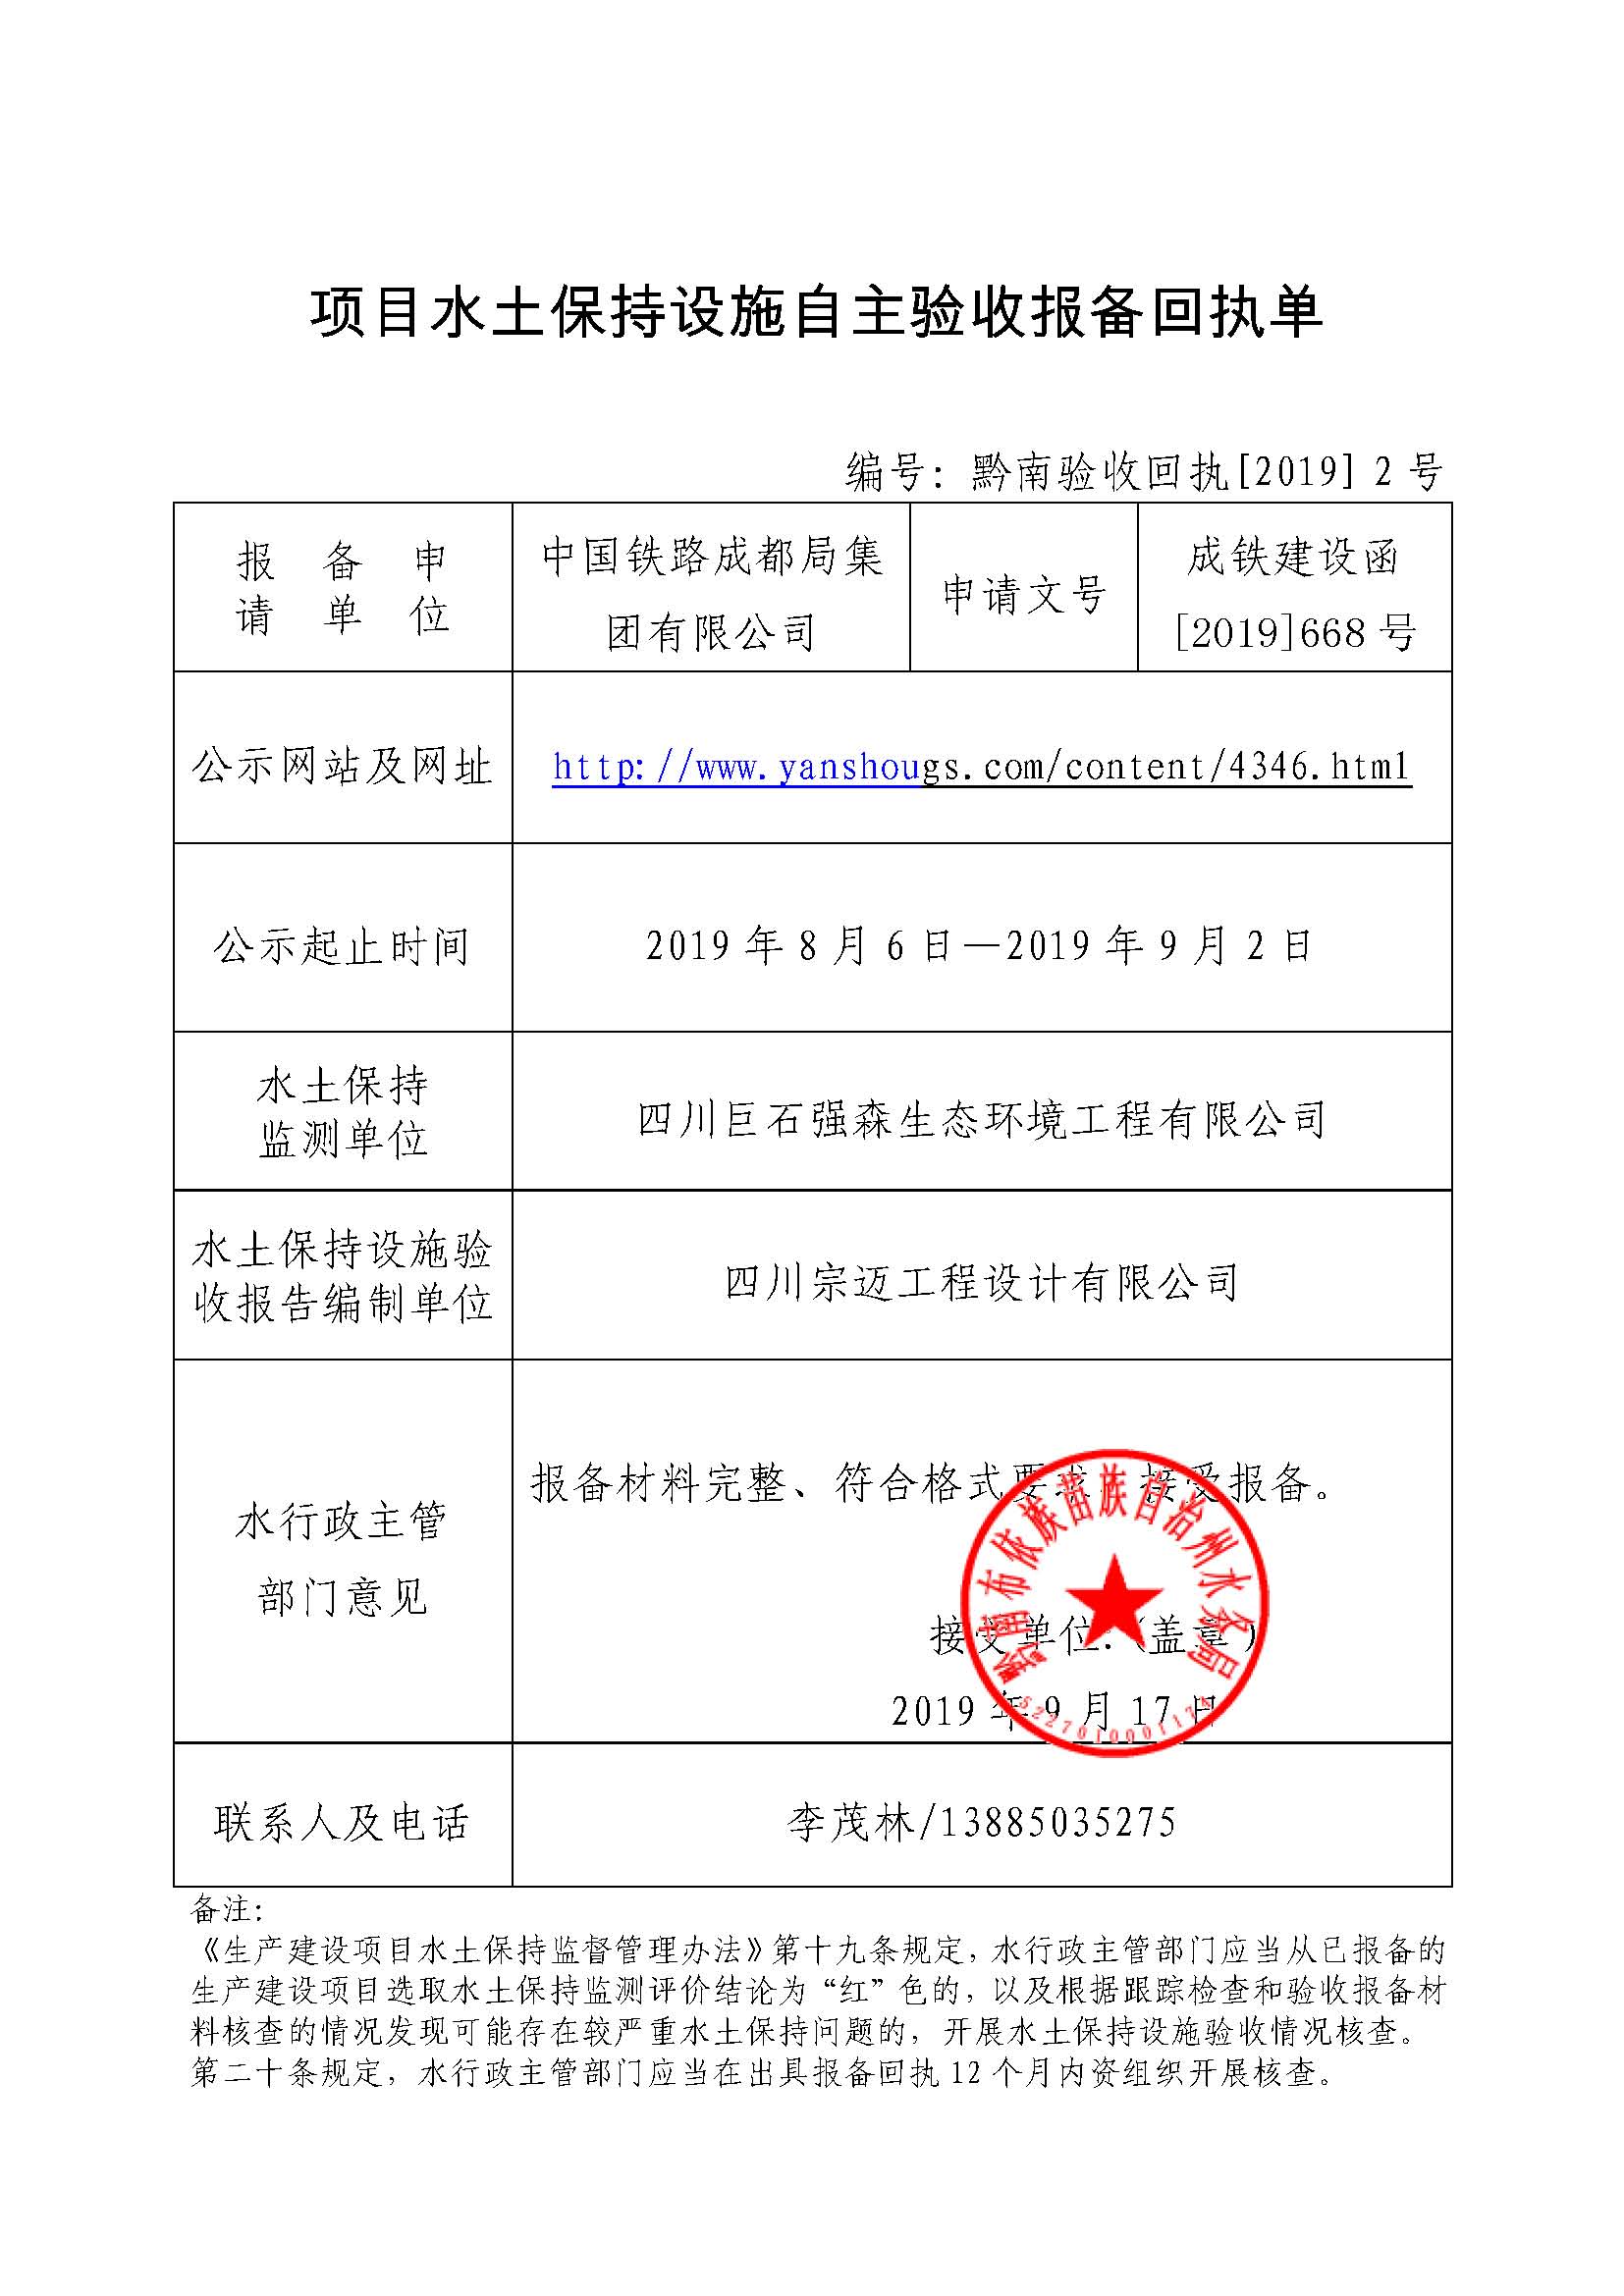 10沪昆线福泉铁路货场扩建工程项目水土保持设施自主验收报备回执单2号.jpg